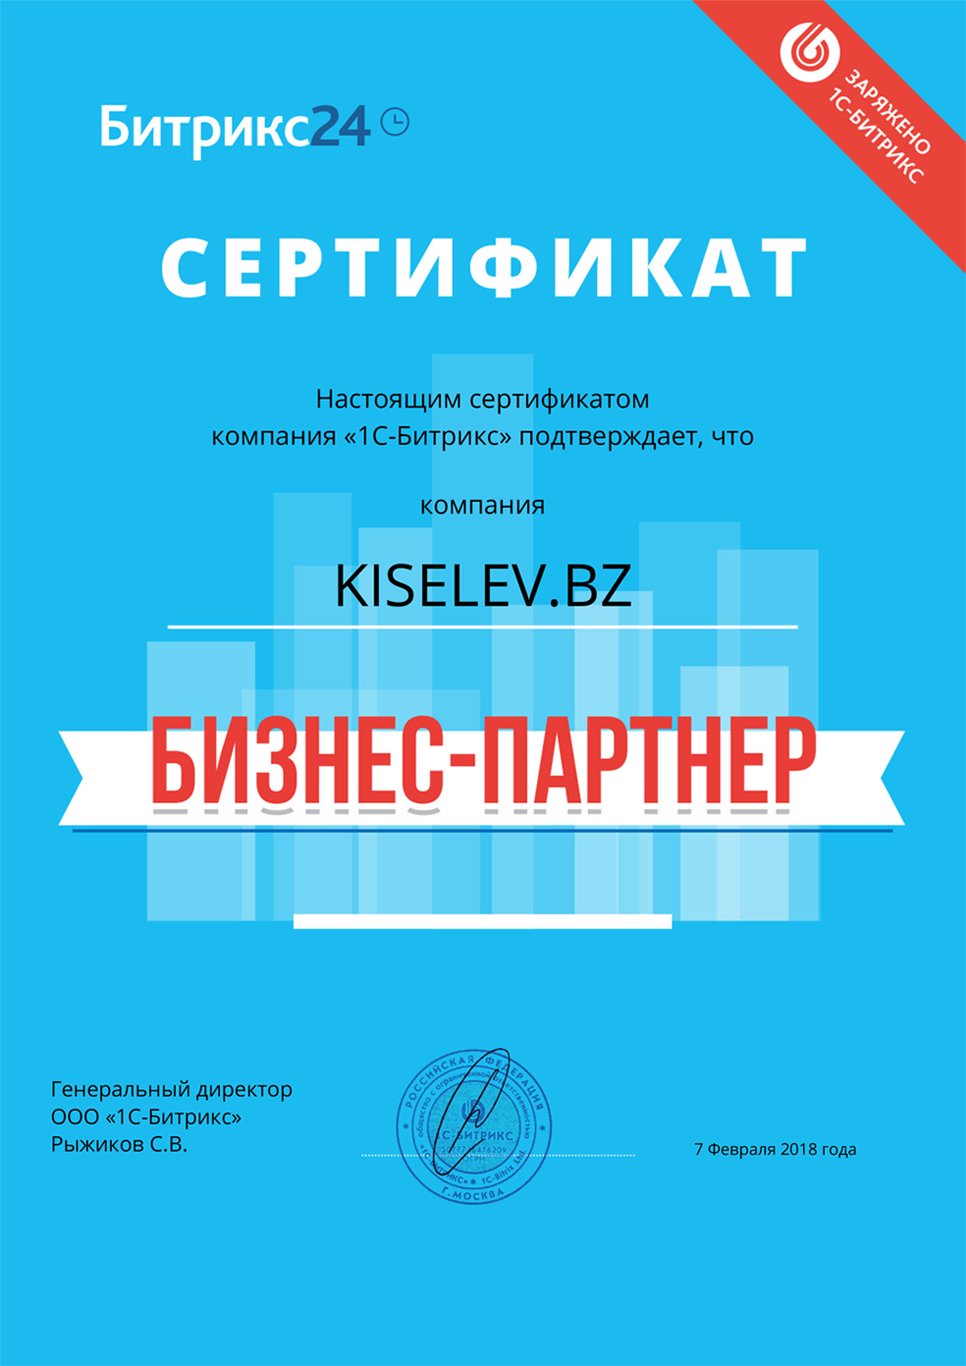 Сертификат партнёра по АМОСРМ в Курильске